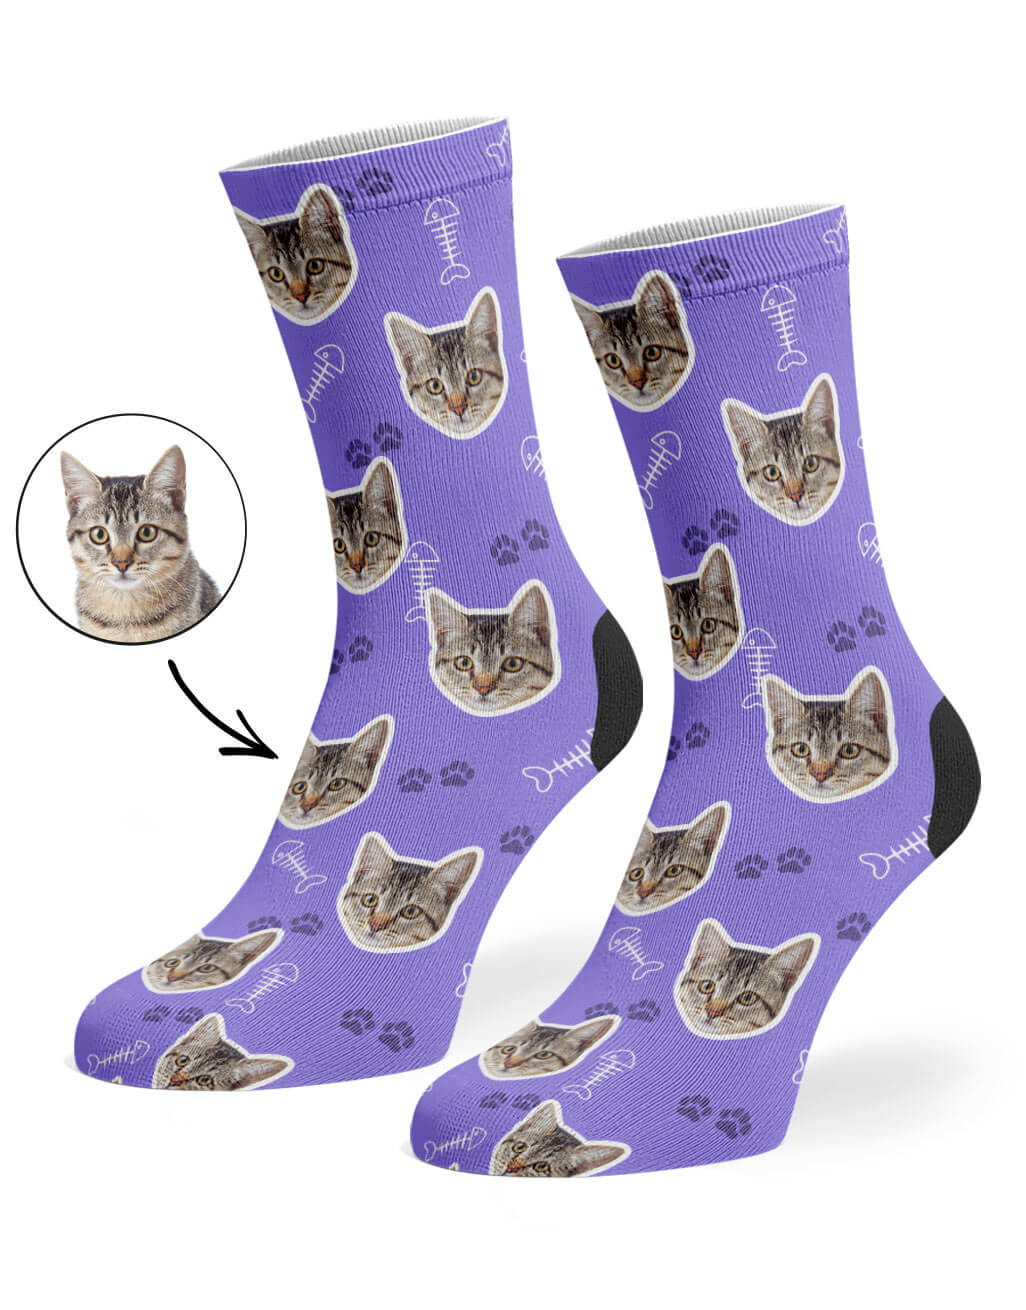 Violet Your Cat On Socks